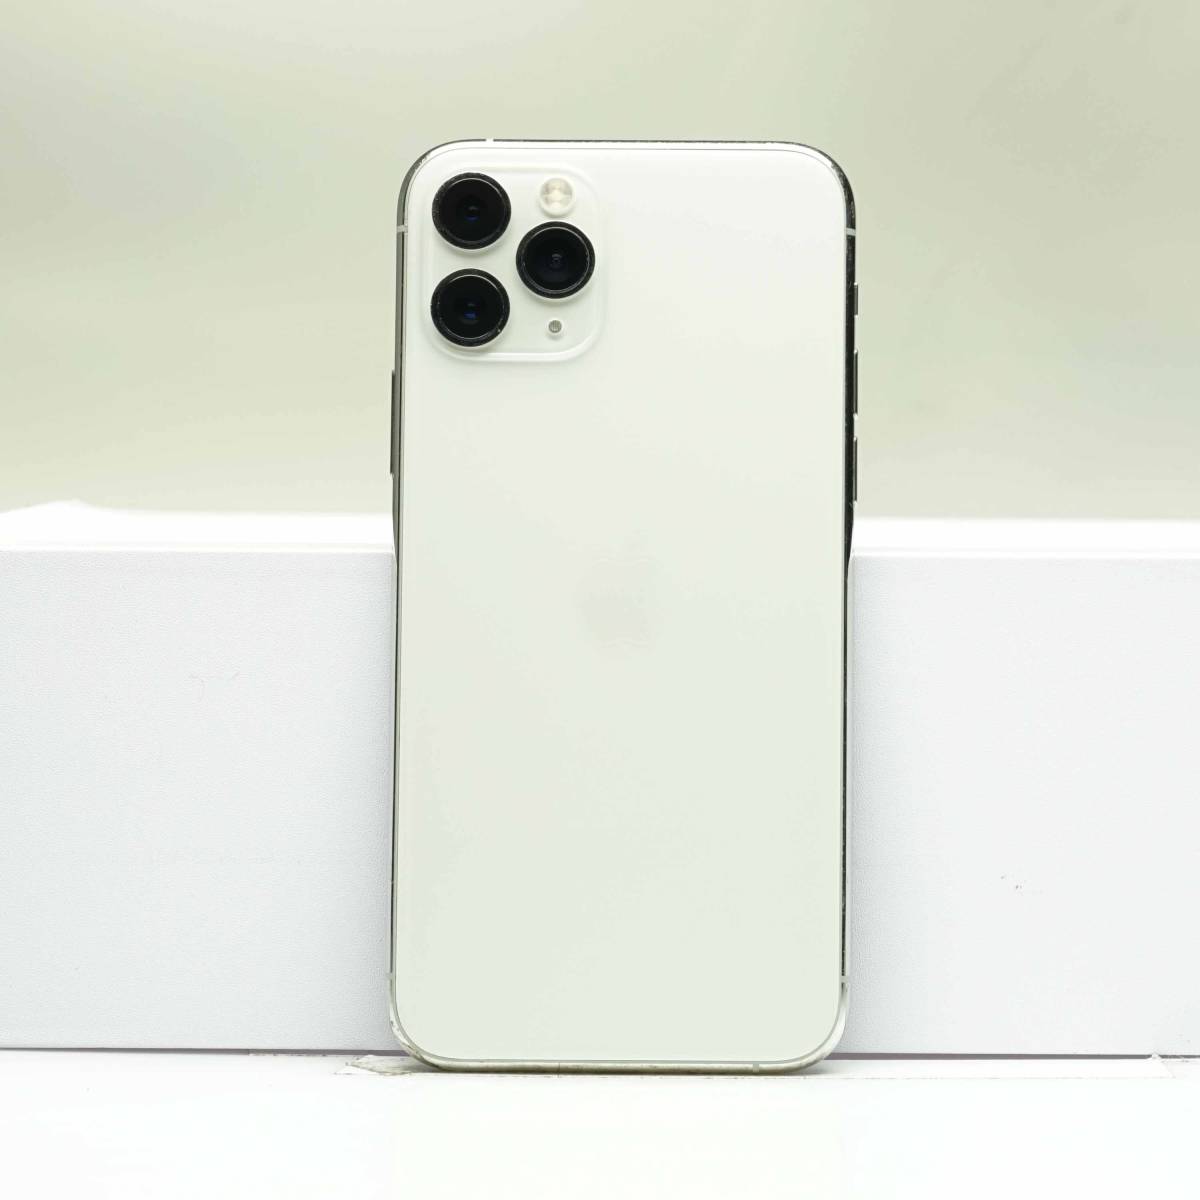 iPhone 11 Pro 256GB シルバー MWC82J/A SIMフリー 訳あり品 中古本体 白ロムの画像1